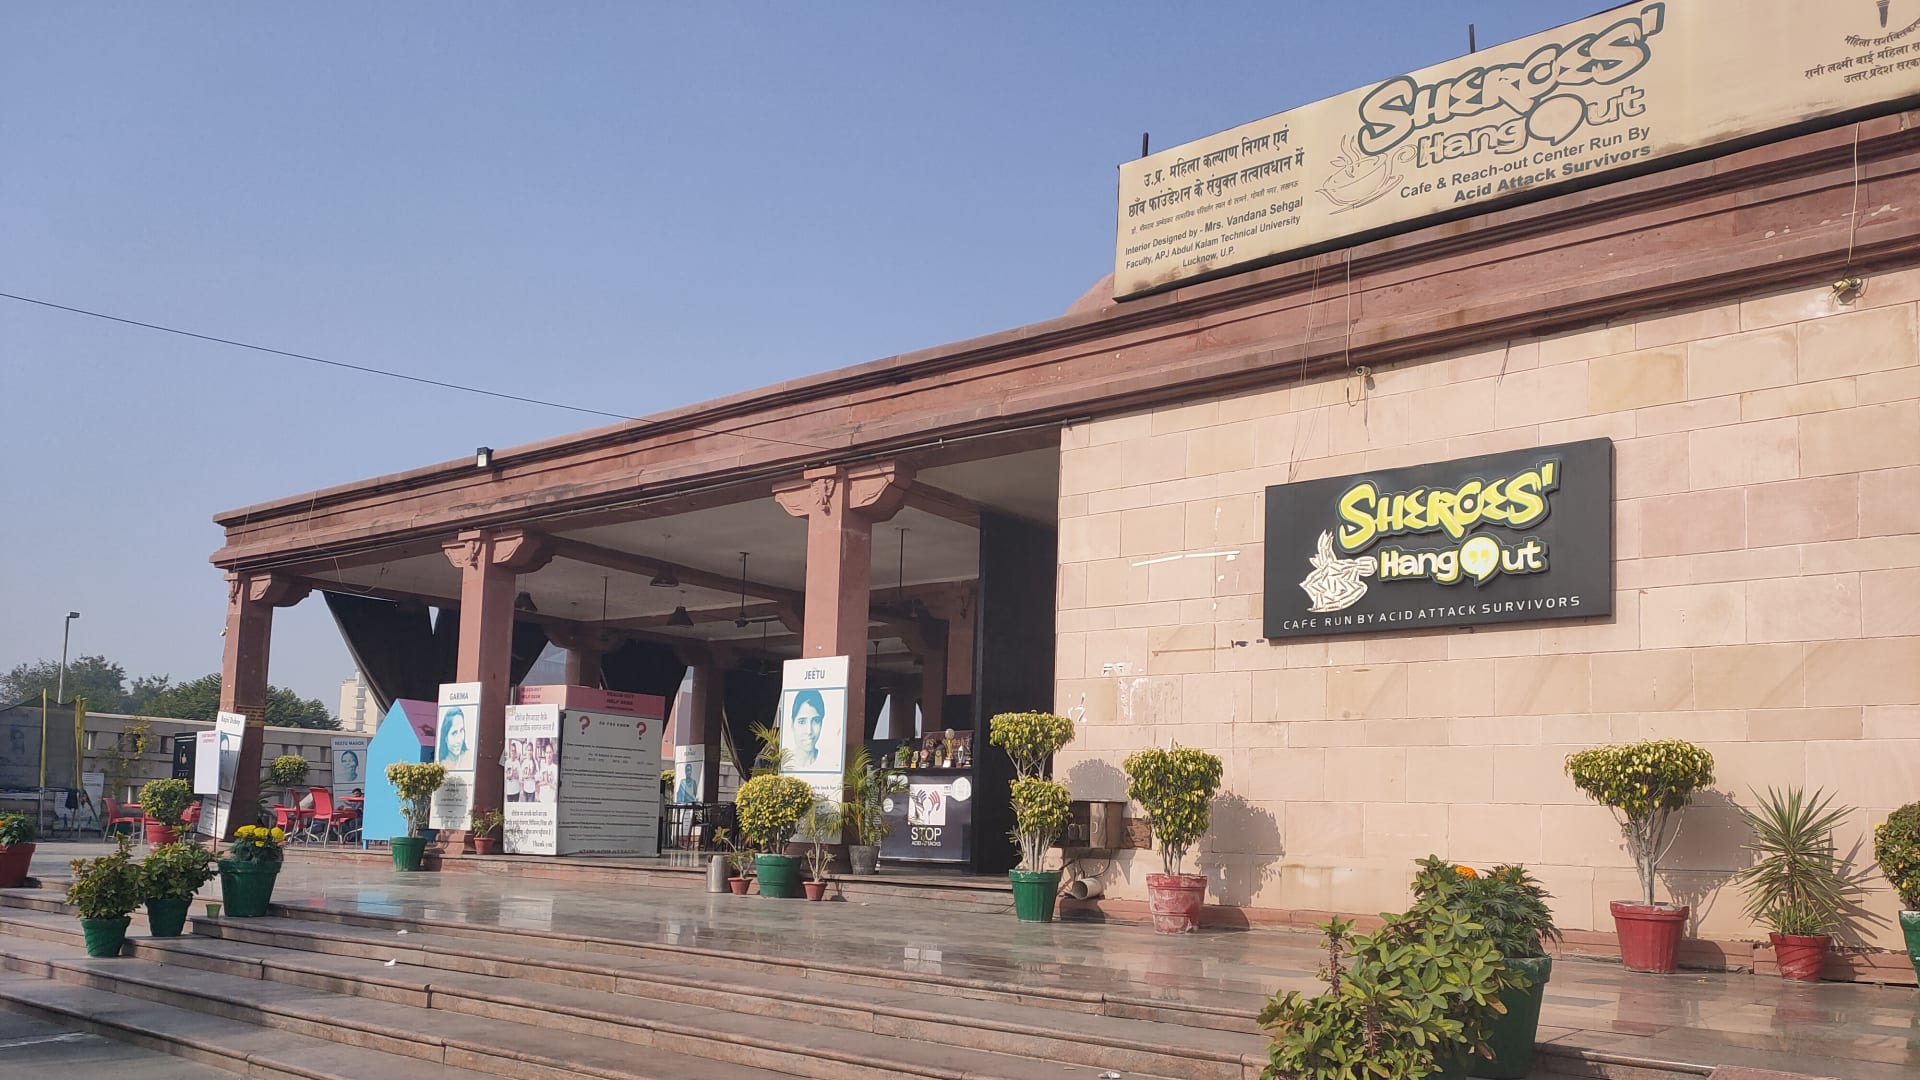 يوفر هذا المقهى بالهند فرصة أخرى للحياة لناجيات هجمات الحمض حتى مع إغلاقه بظل كورونا